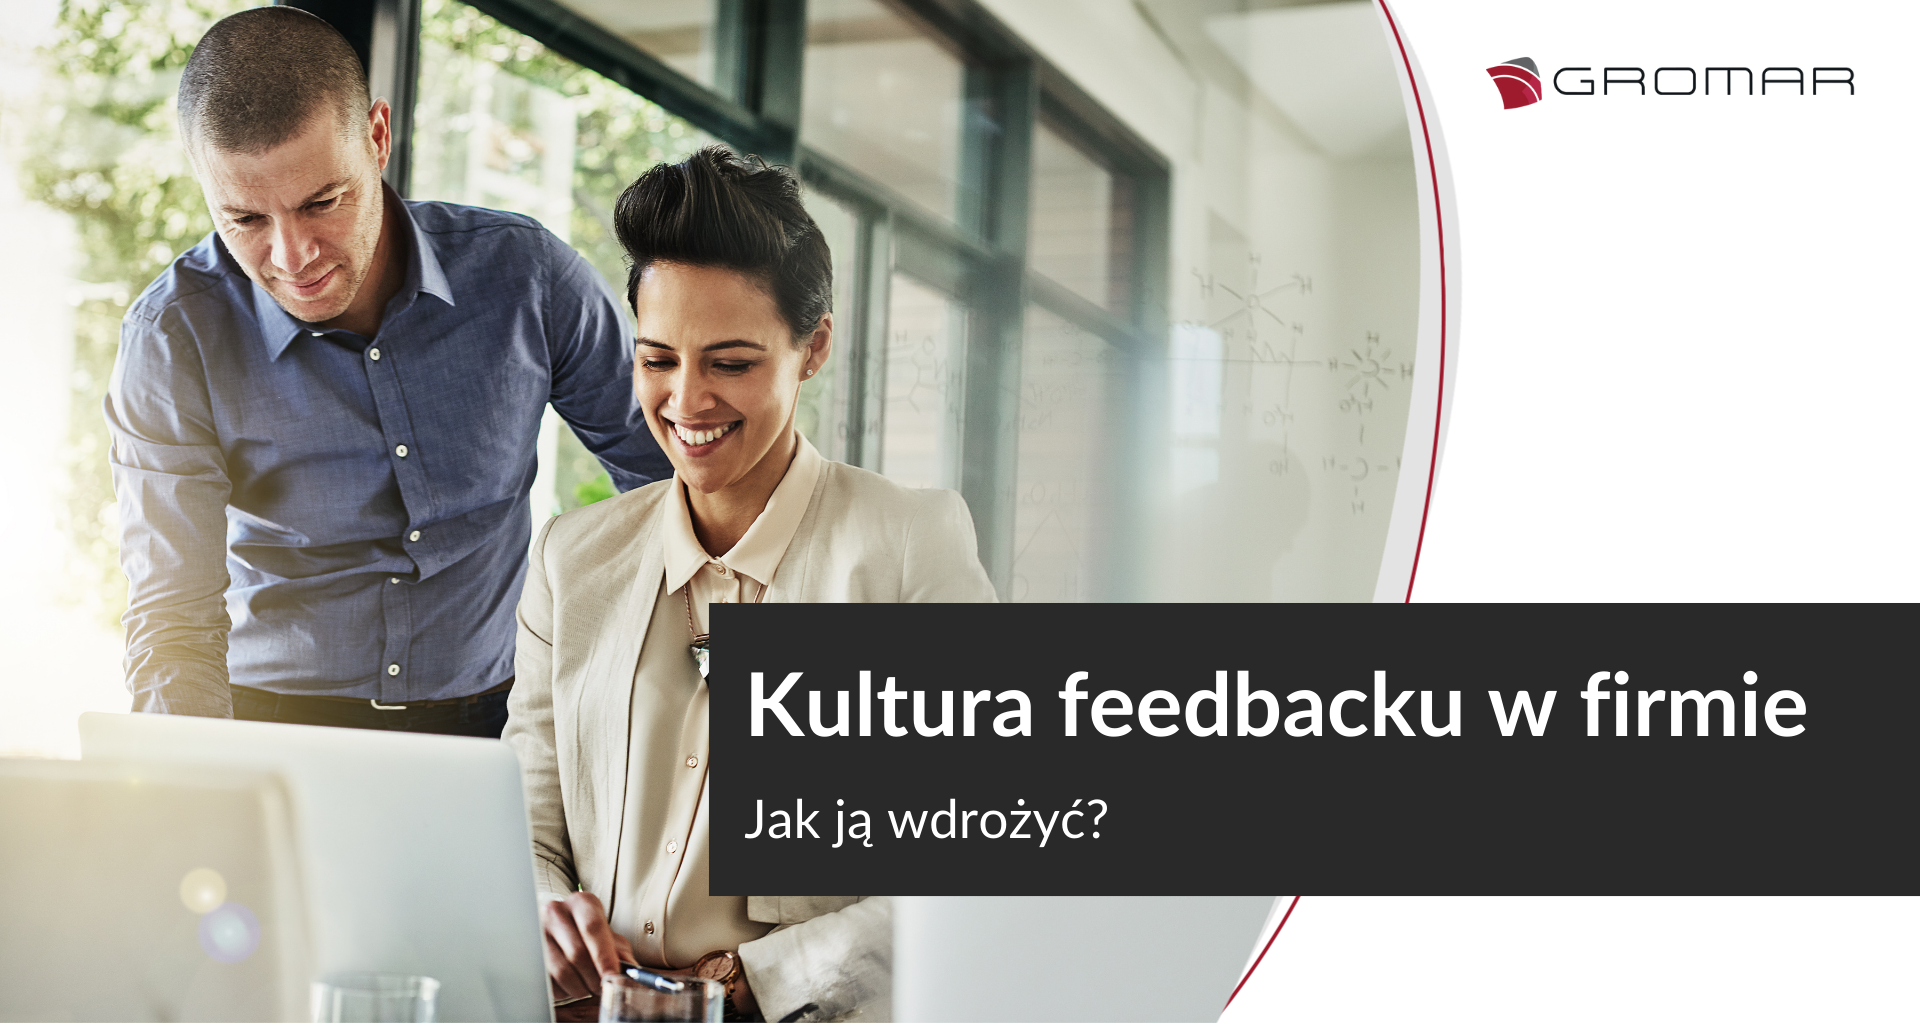 Kultura feedbacku w firmie: jak wdrożyć?